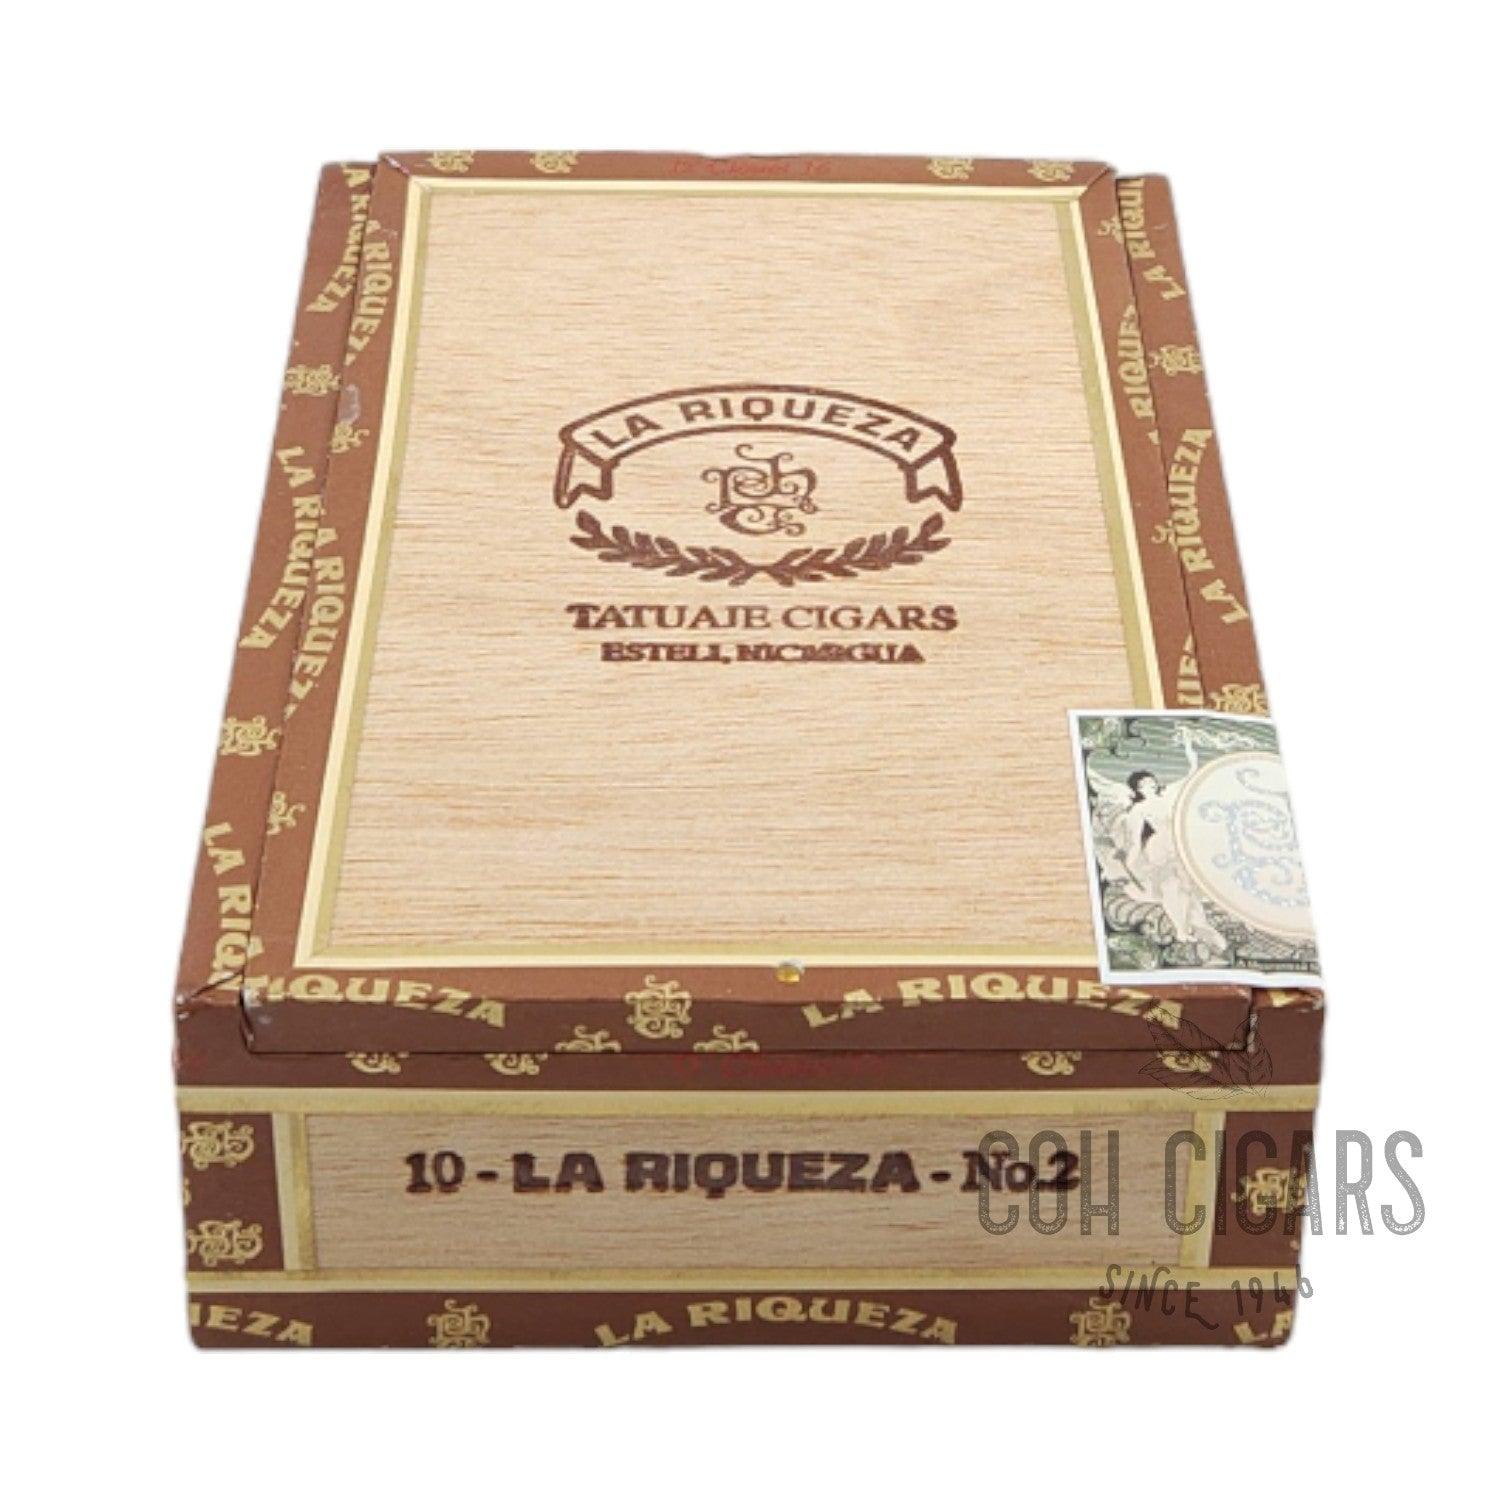 Tatuaje Cigar | La Riqueza No.2 | Box 10 - HK CohCigars